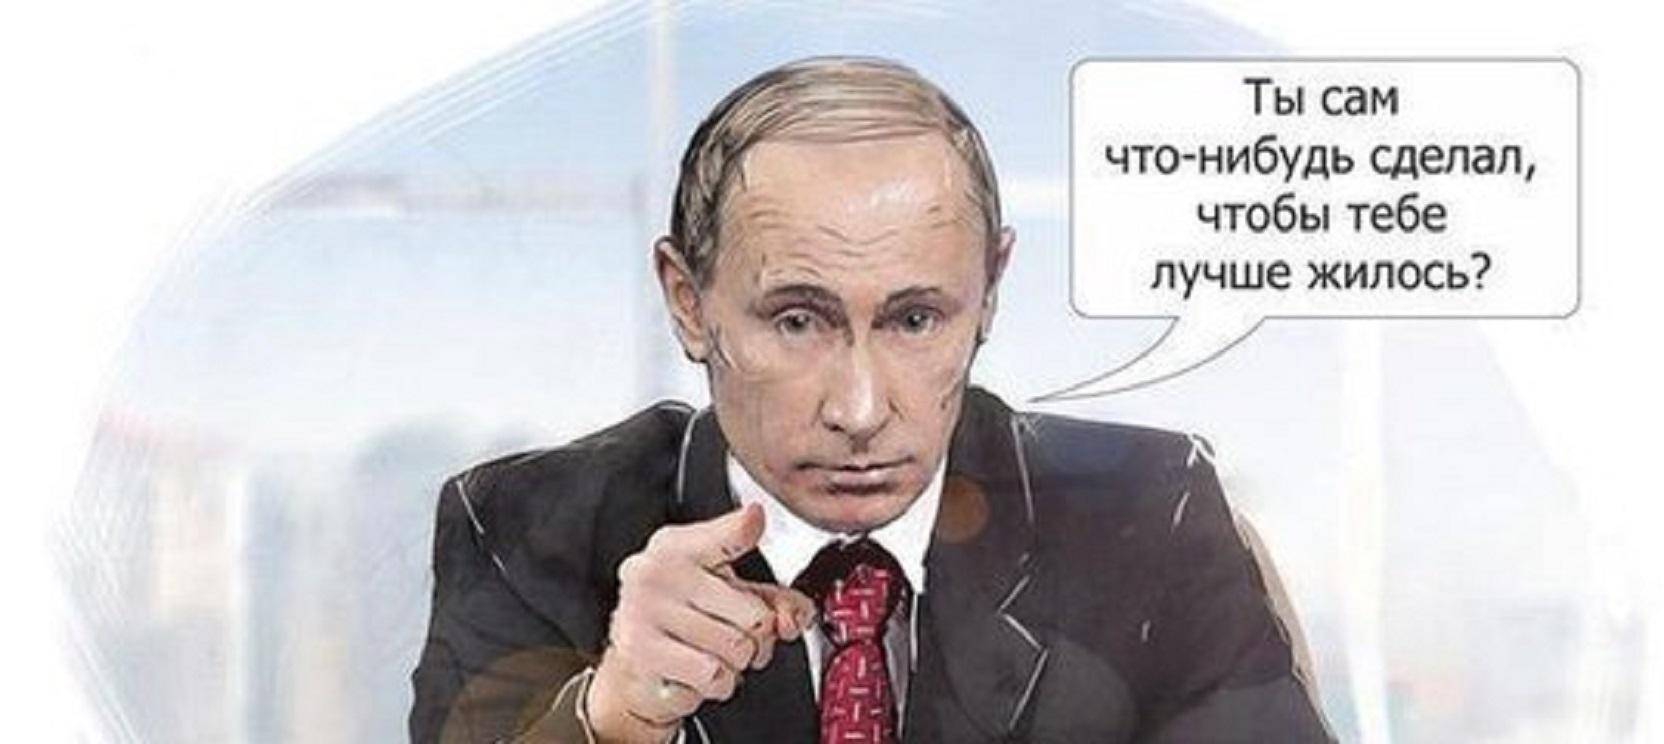 Сам что это. Путин ты сам что нибудь сделал. Путин терпеть. Путин терпи.